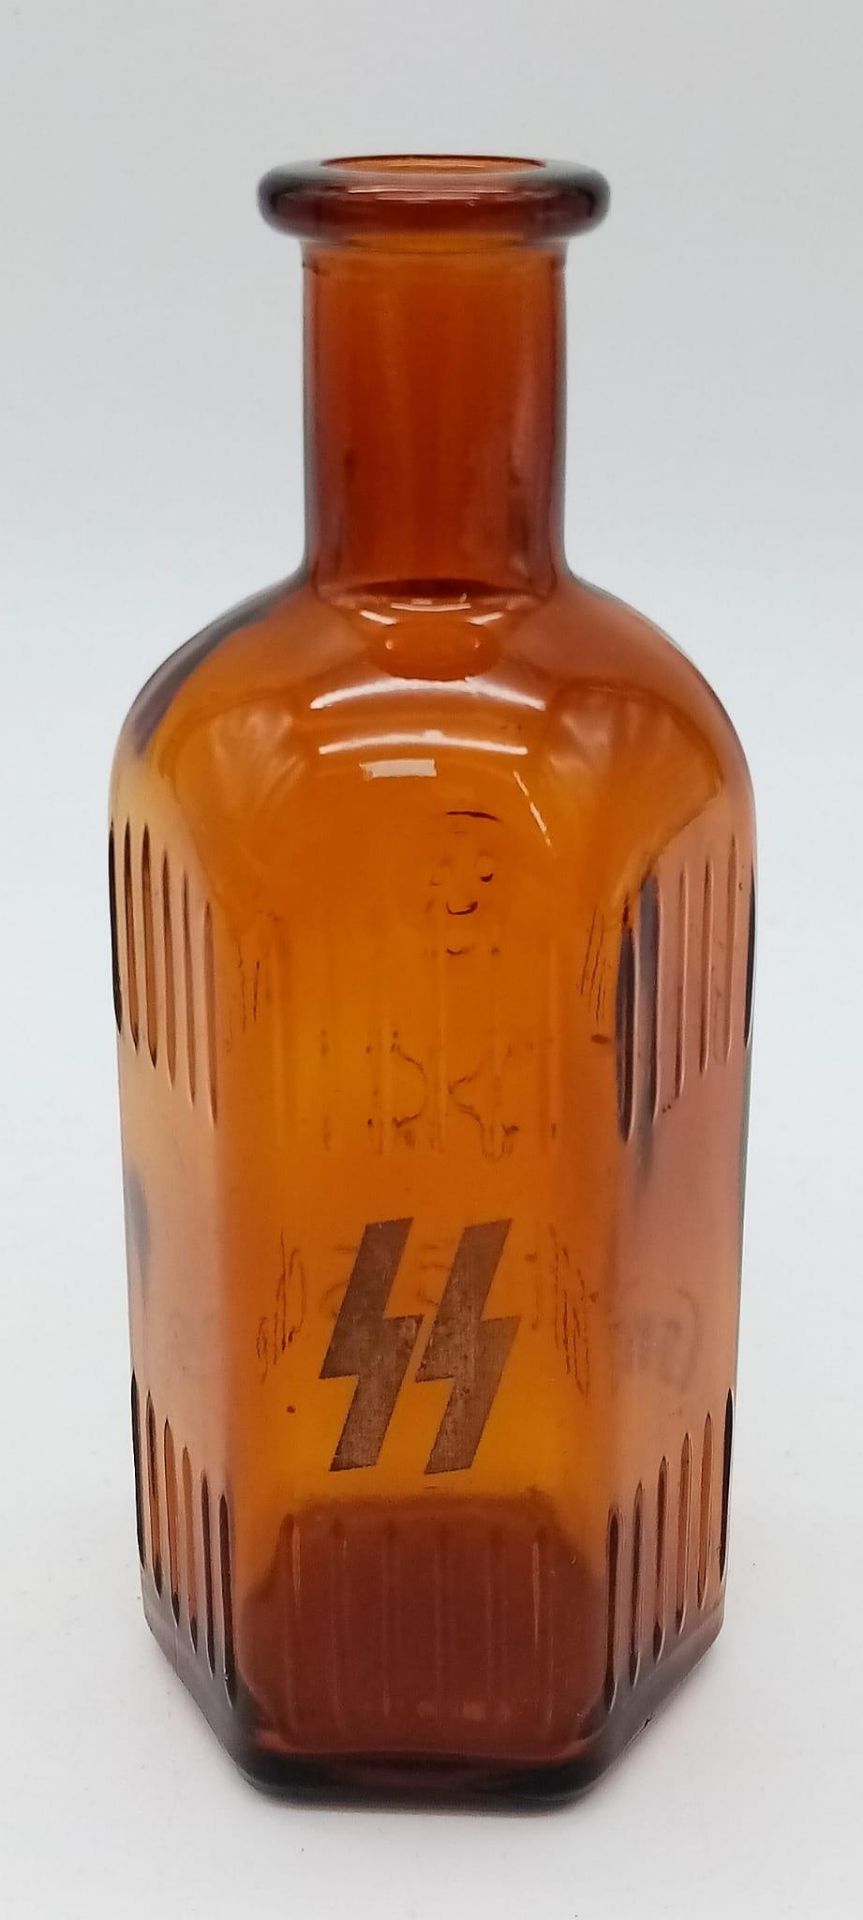 WW2 German Waffen SS Poison Bottle. Marke “Gift”